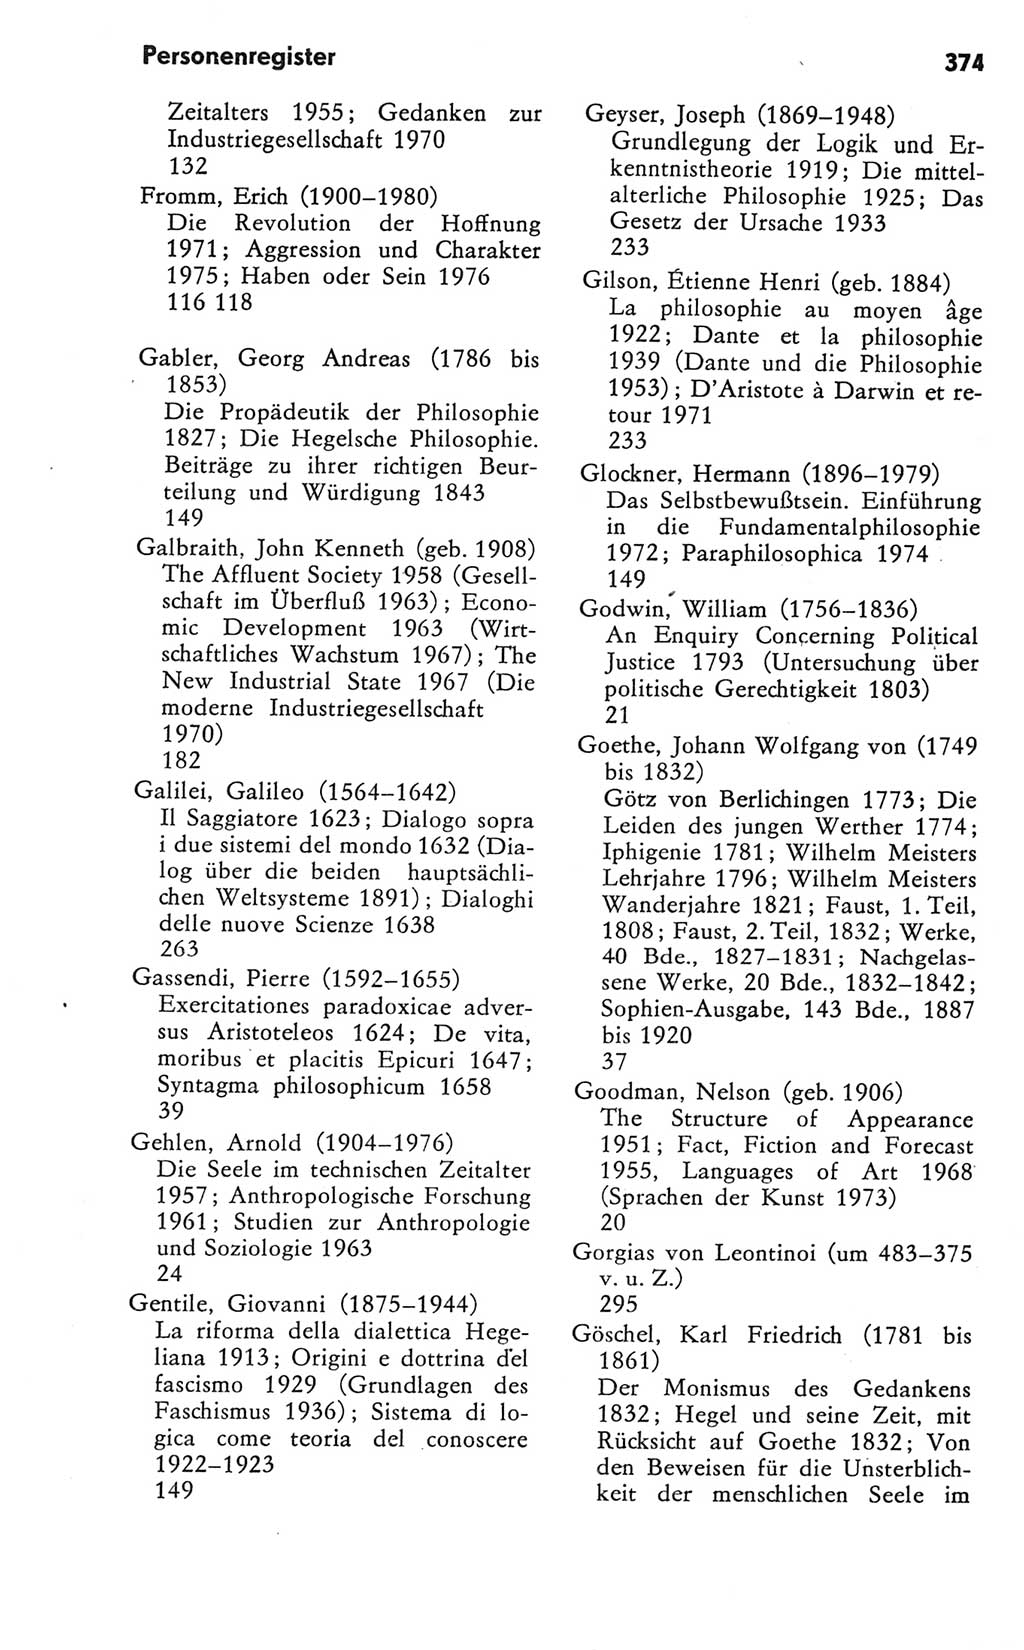 Kleines Wörterbuch der marxistisch-leninistischen Philosophie [Deutsche Demokratische Republik (DDR)] 1981, Seite 374 (Kl. Wb. ML Phil. DDR 1981, S. 374)